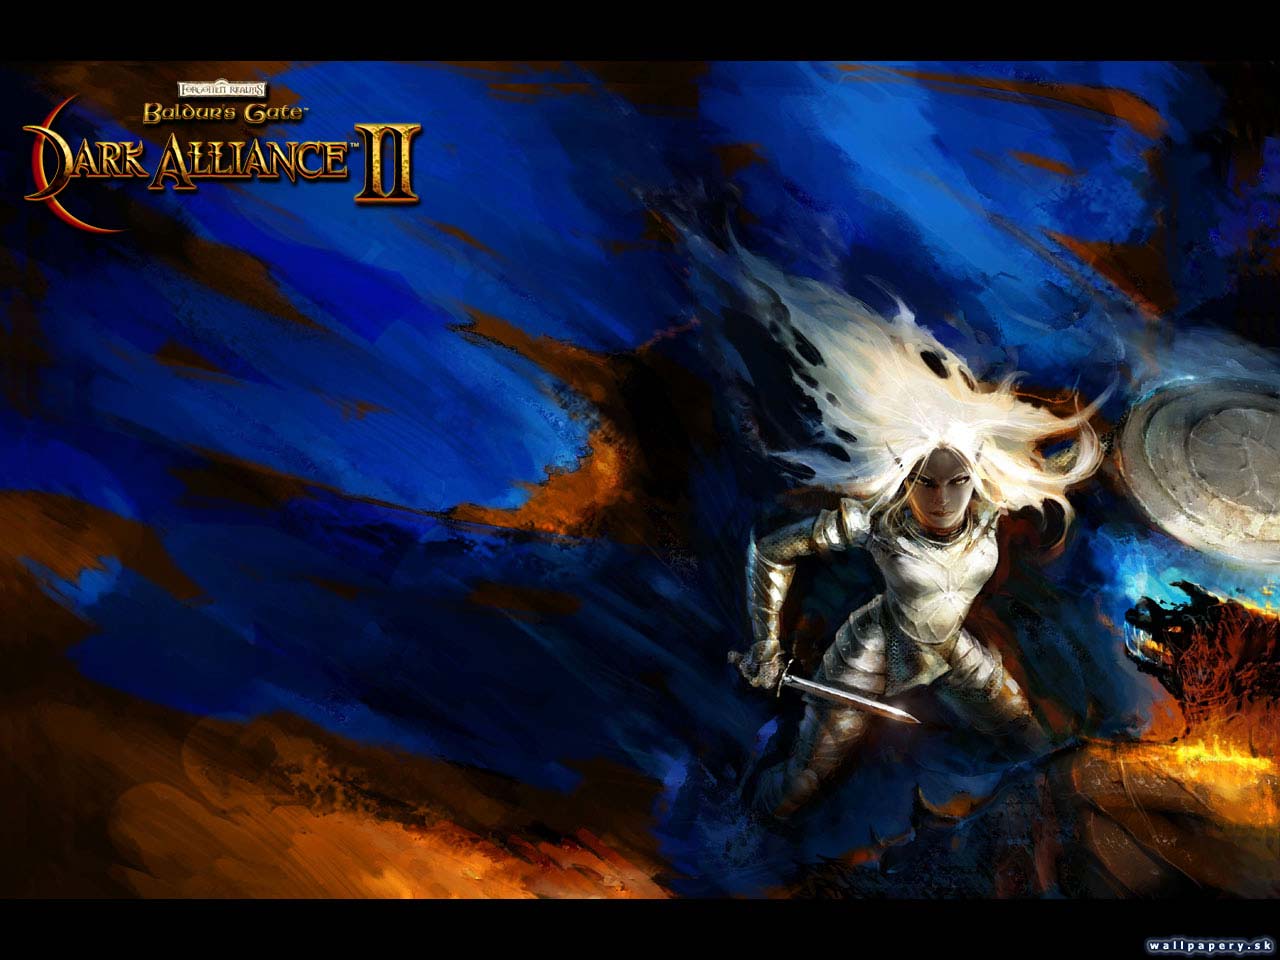 Baldur's Gate: Dark Alliance - wallpaper 2